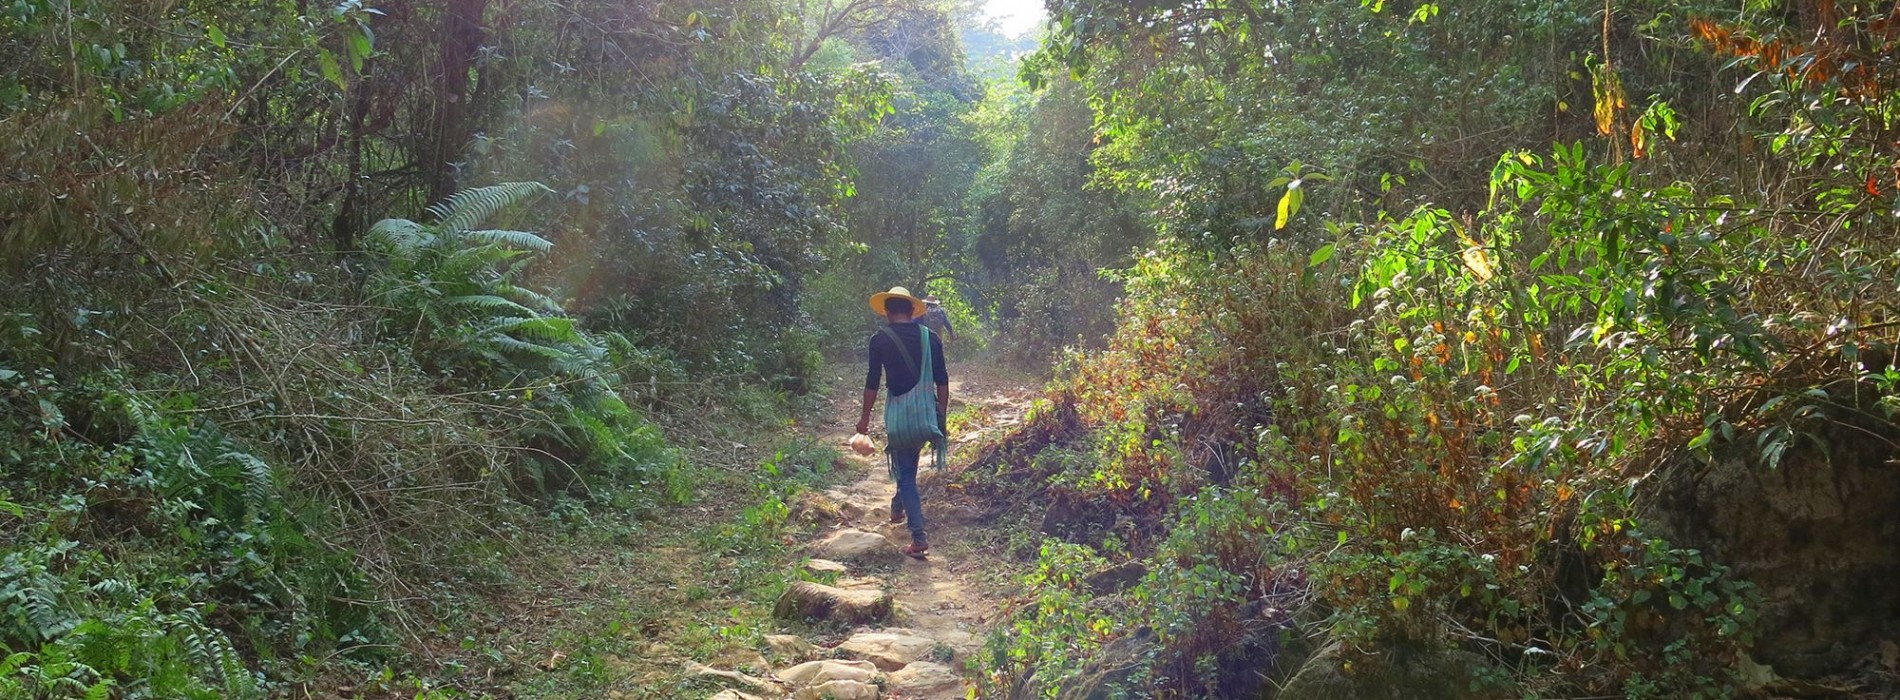 Trekking_through_forested_hills_Burma.jpg